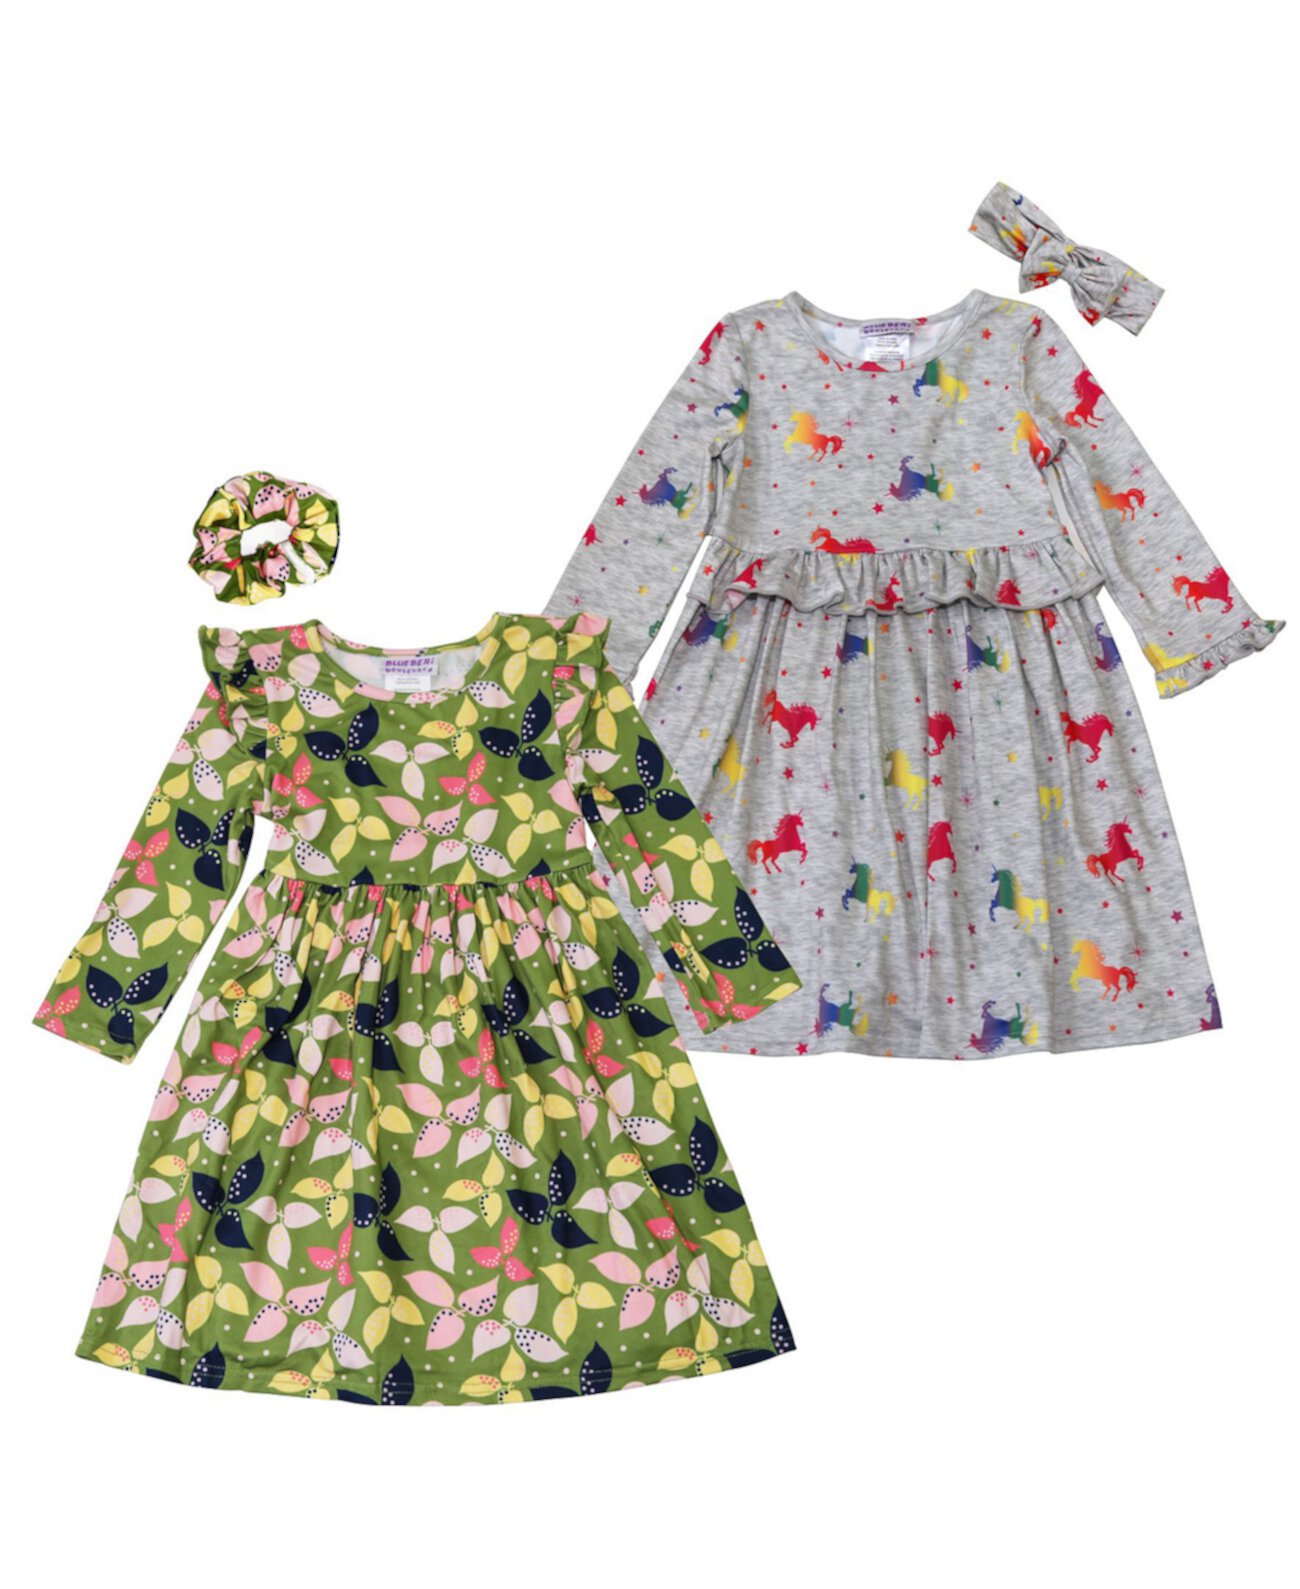 Платья с принтом листьев и единорога для маленьких девочек с аксессуарами для волос, набор из 4 предметов Blueberi Boulevard